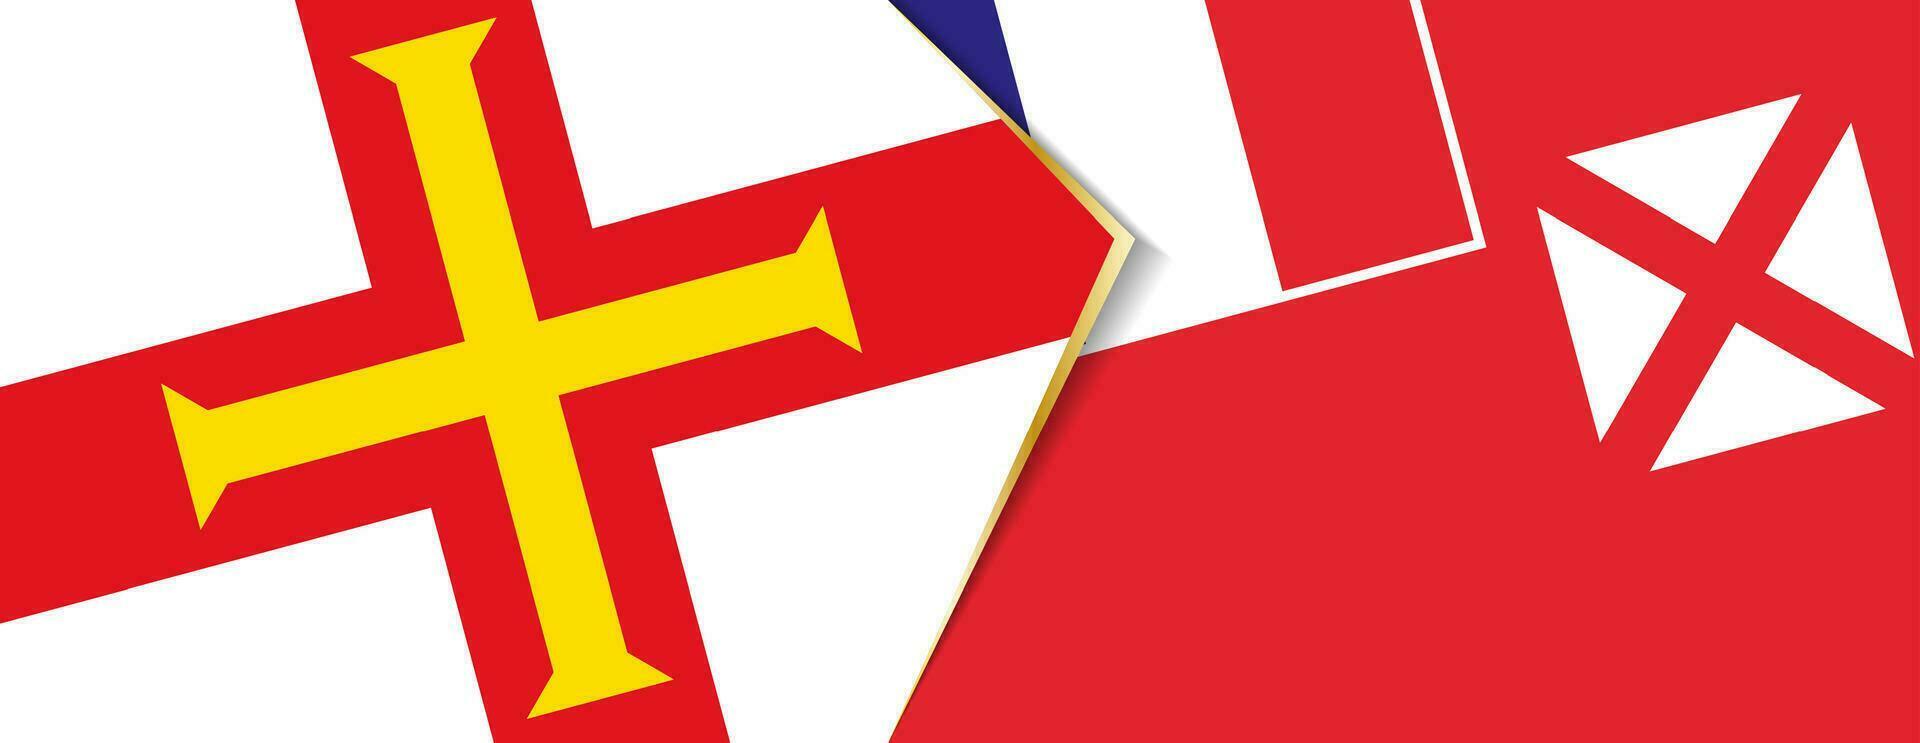 Guernsey und Wallis und futuna Flaggen, zwei Vektor Flaggen.